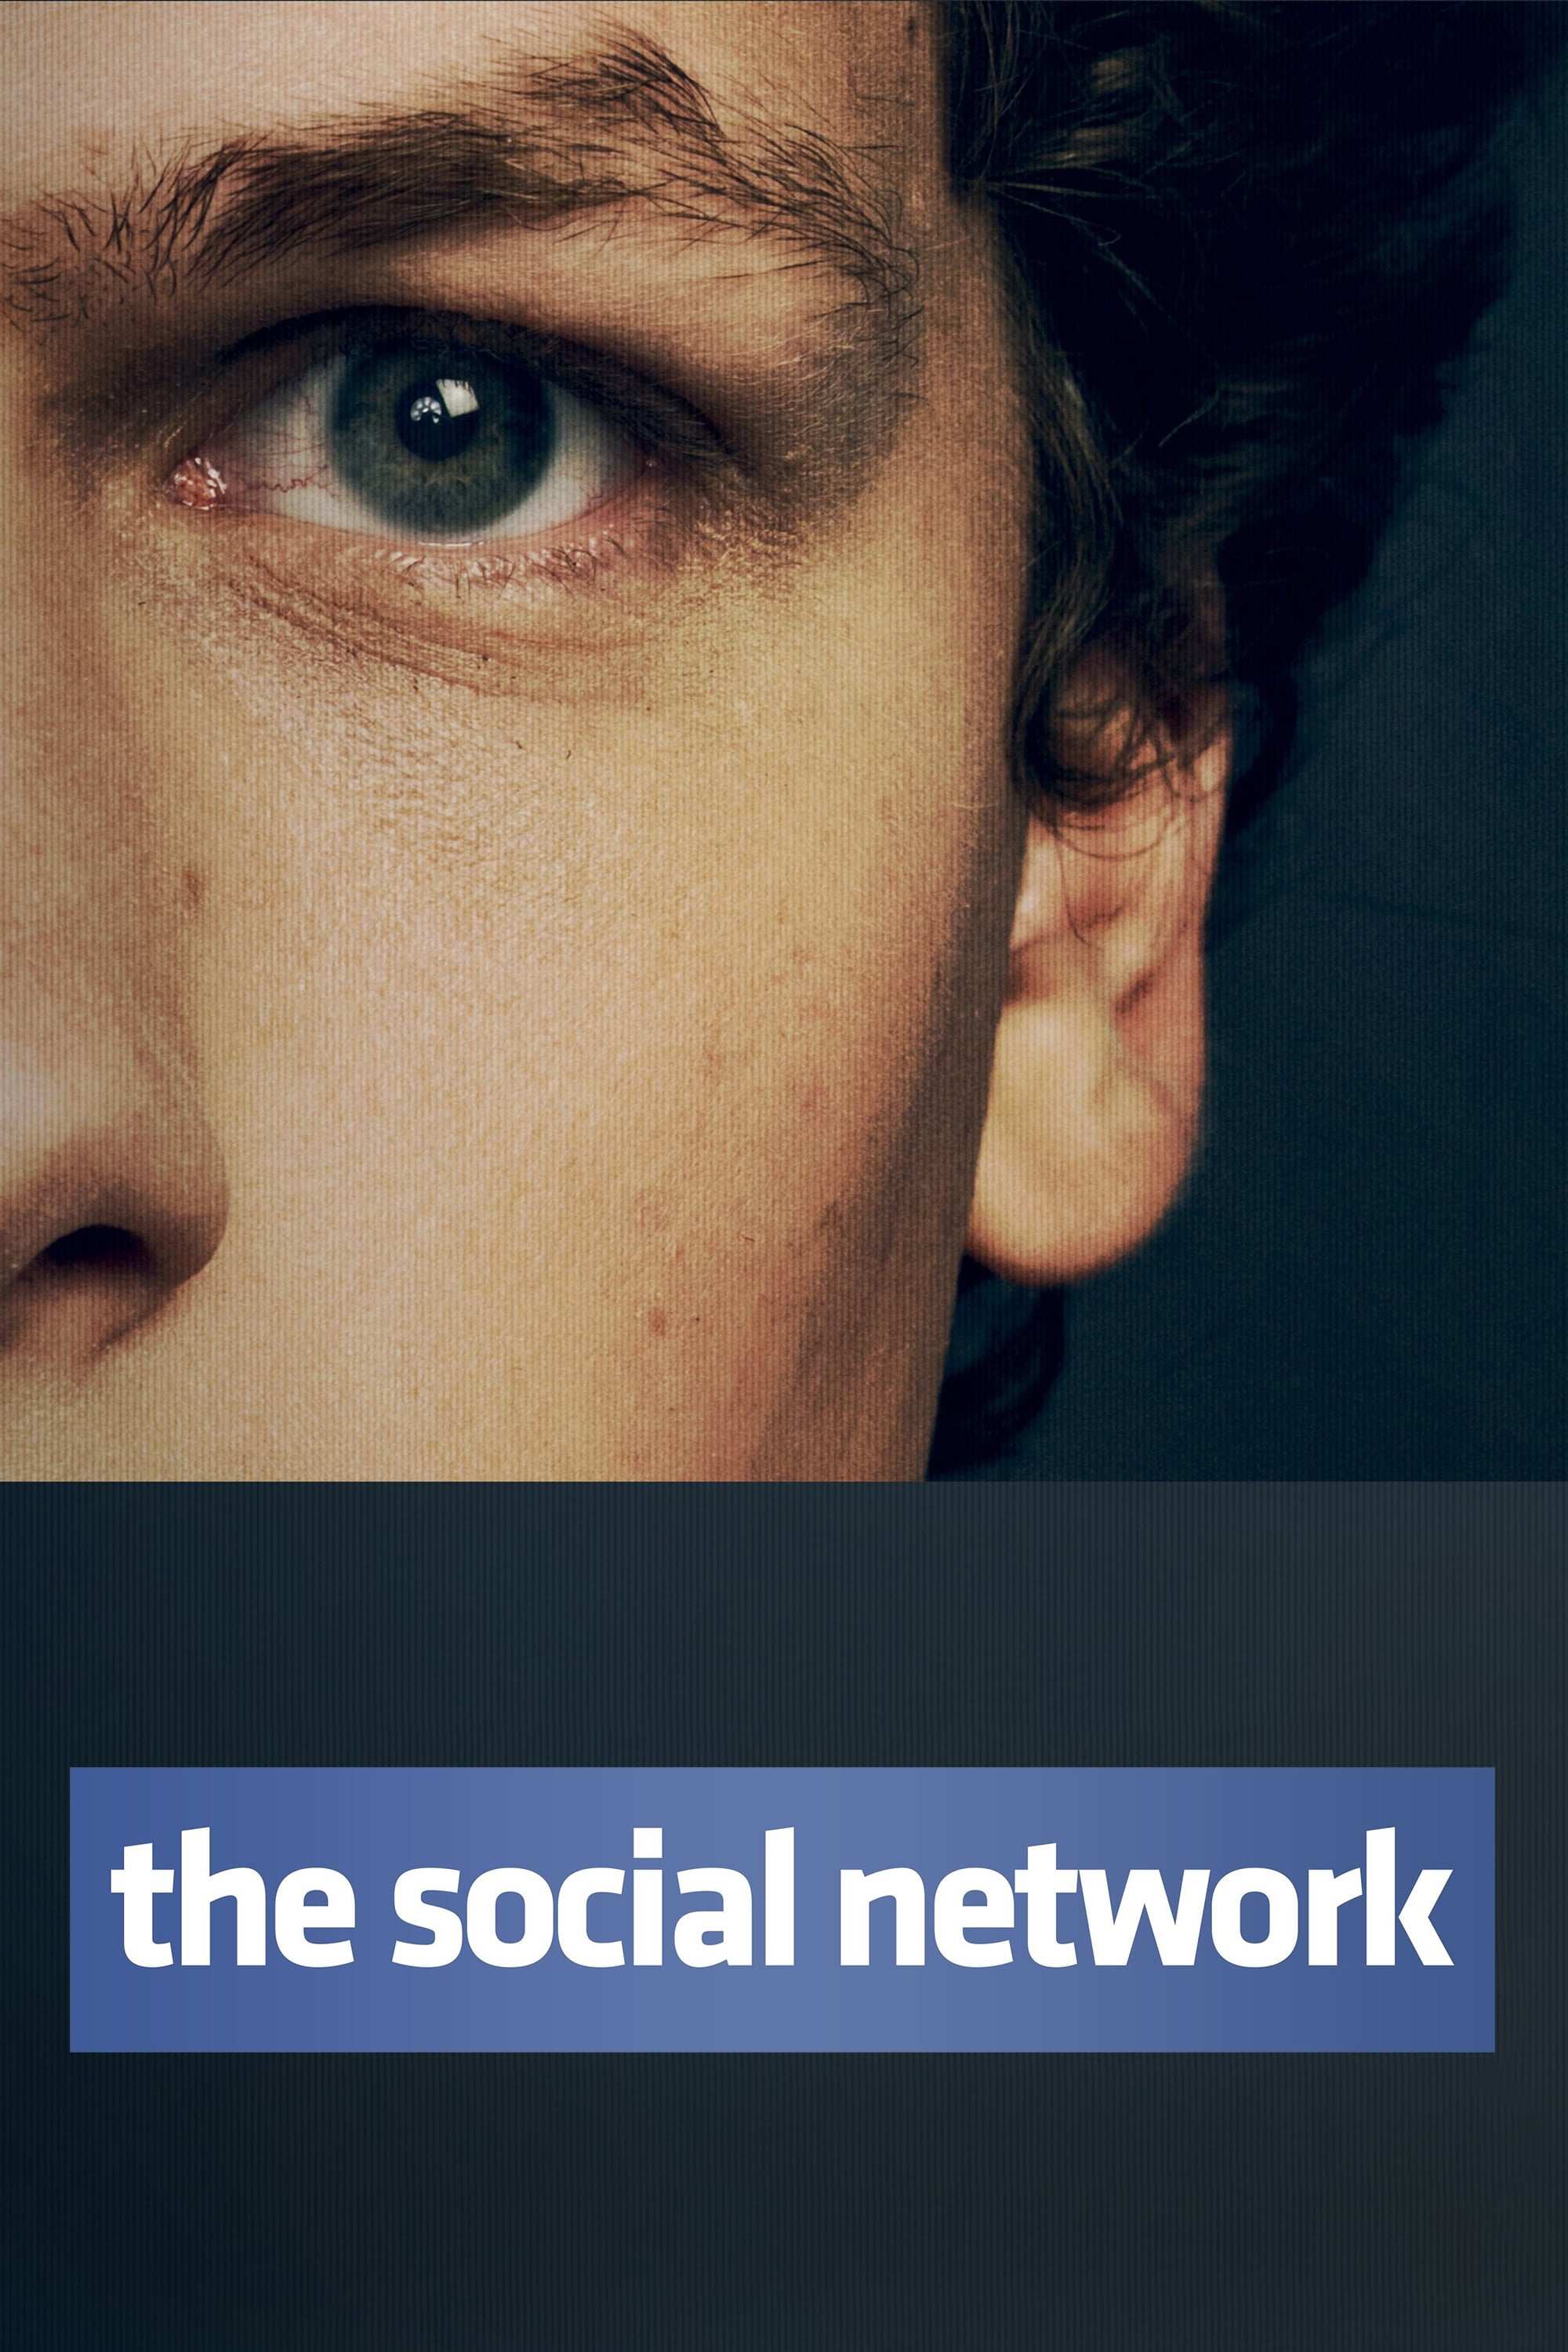 social network movie wallpaper